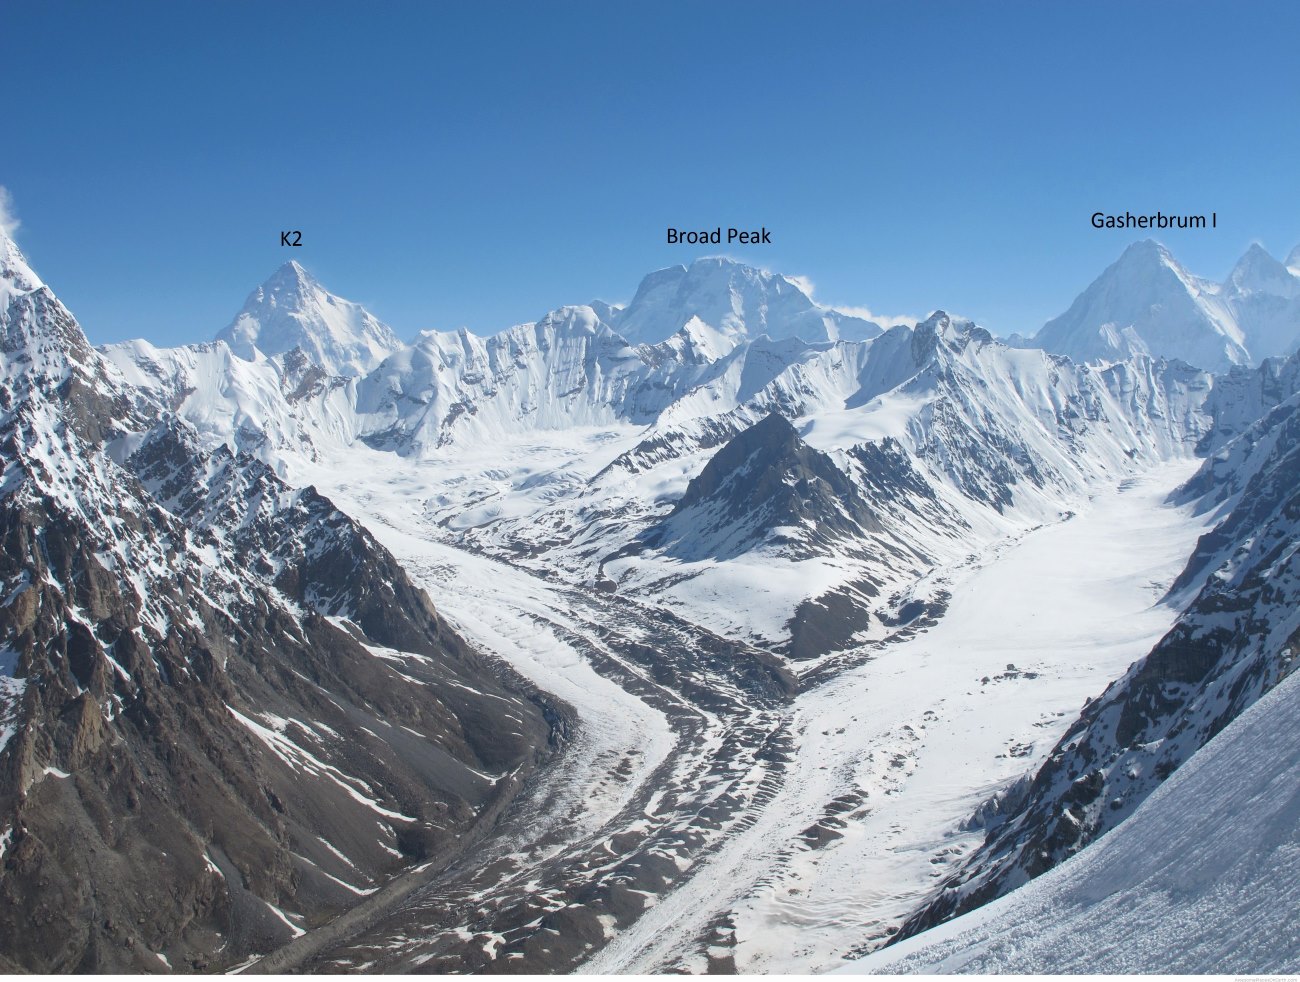 La alpinista andorrana Stefi Troguet intentará el K2 y el Broad Peak